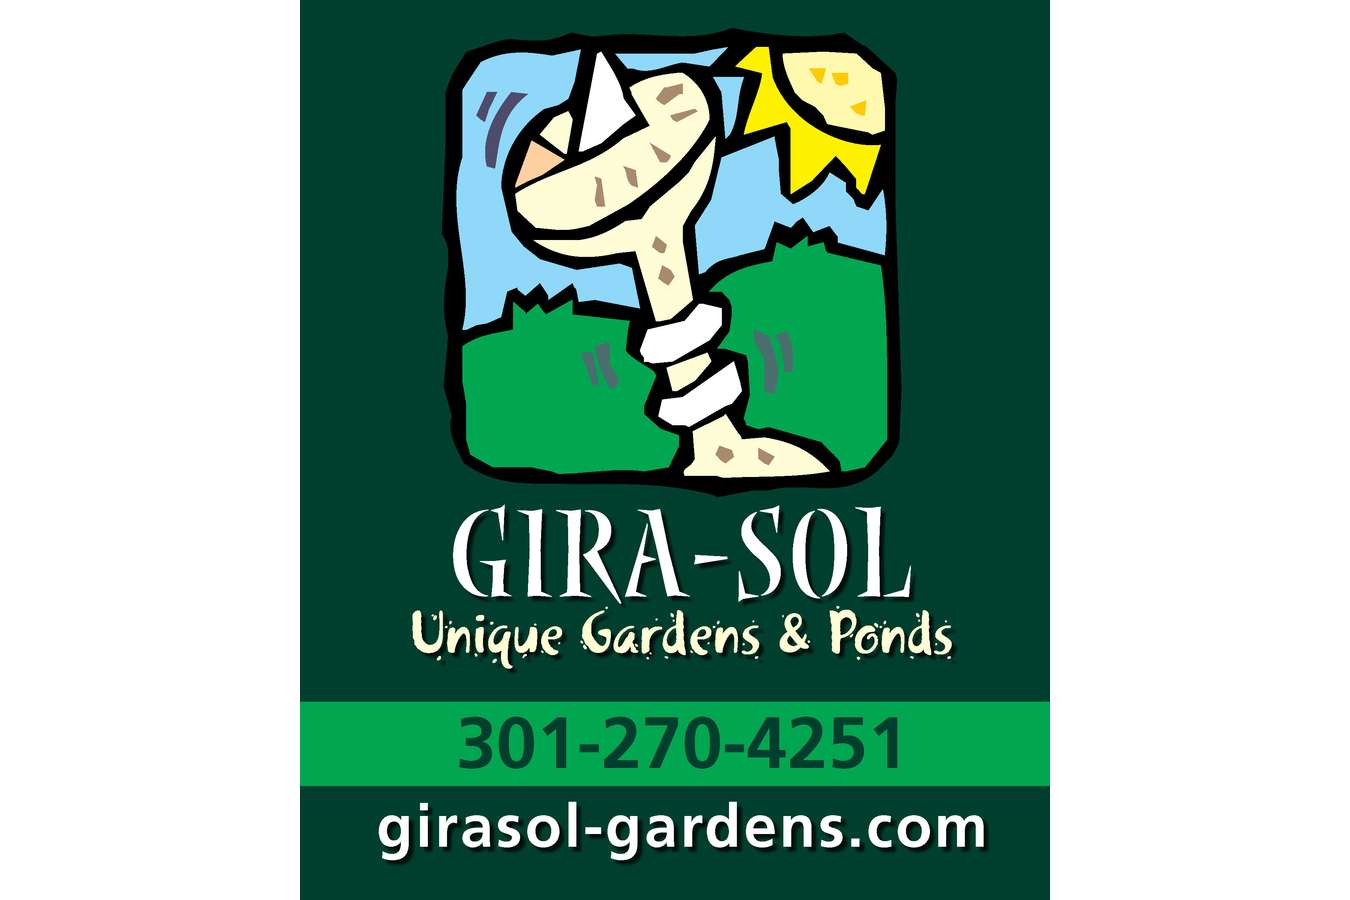 Girasol Logo Plaque : Girasol is Portuguese for sunflower and sundial